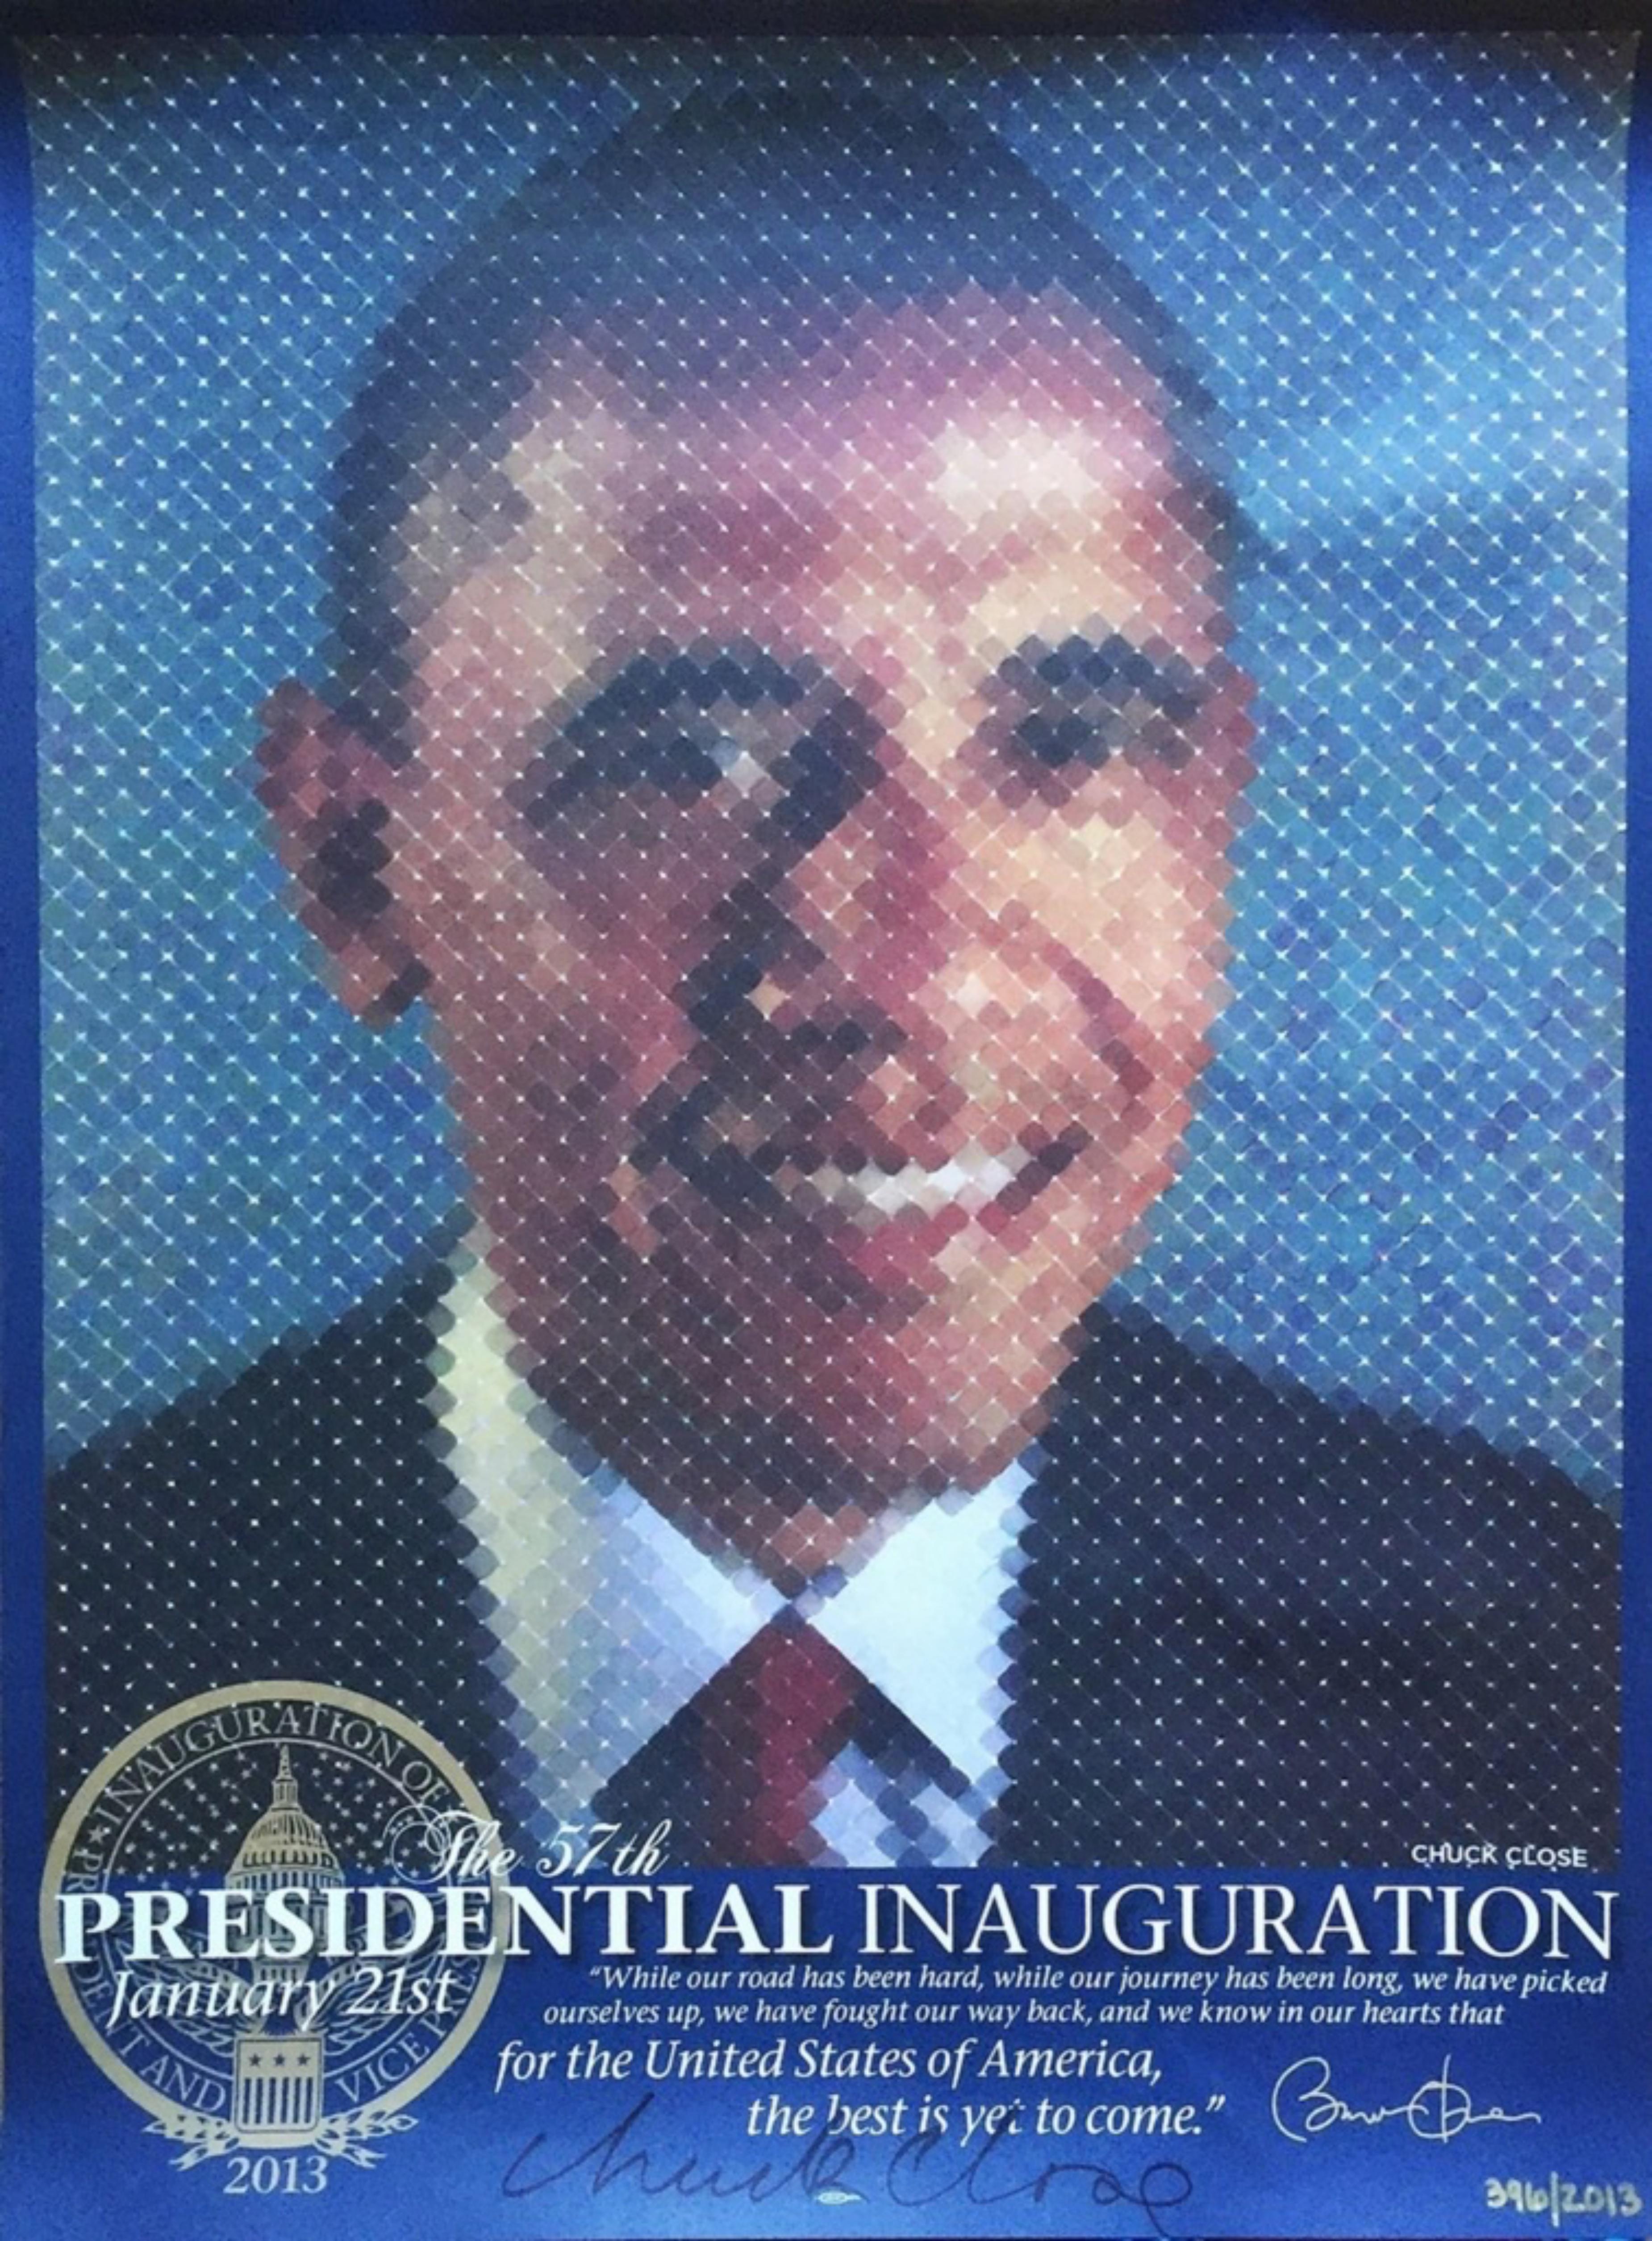 L'inauguration présidentielle d' Obama (uniquement signée à la main par Chuck Close) 